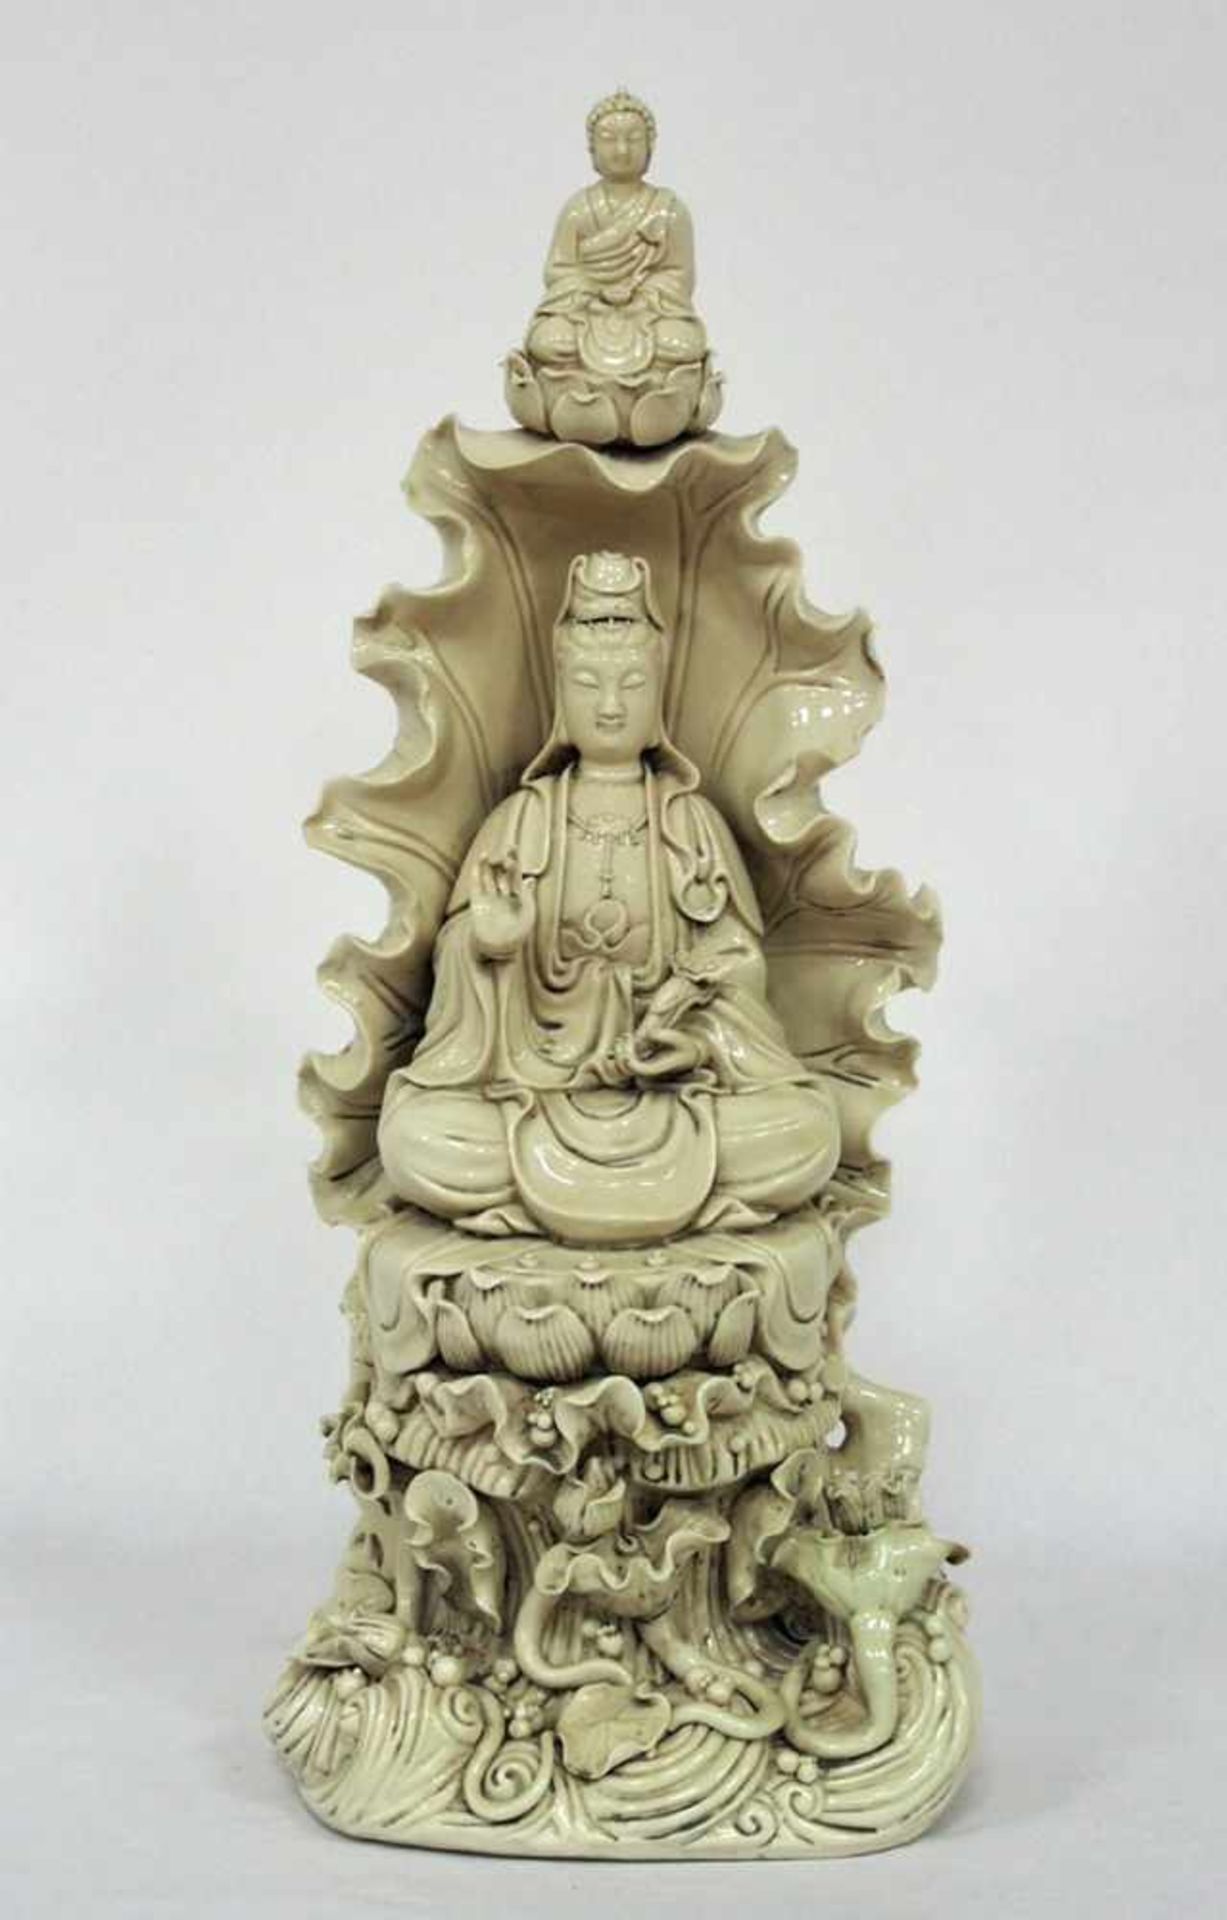 Guanyin auf LotusthronPorzellan, verso gemarkt, China 19. / 20. Jahrhundert